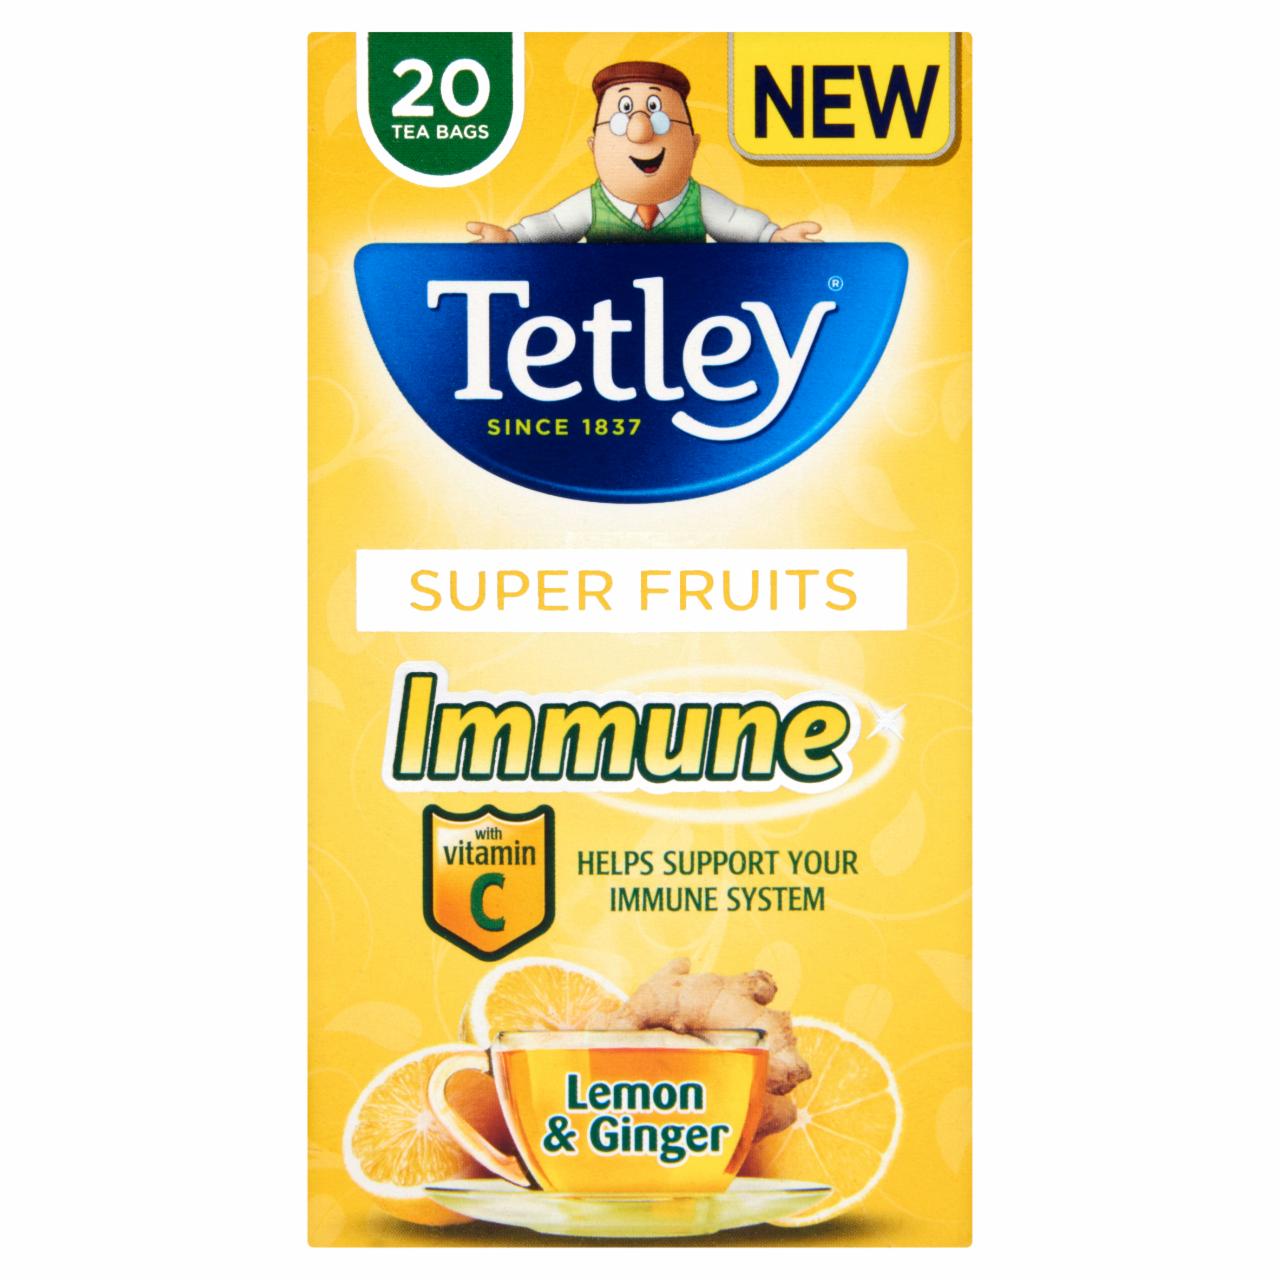 Képek - Tetley citrom és gyömbér gyümölcstea hozzáadott C-vitaminnal 20 filter 40 g